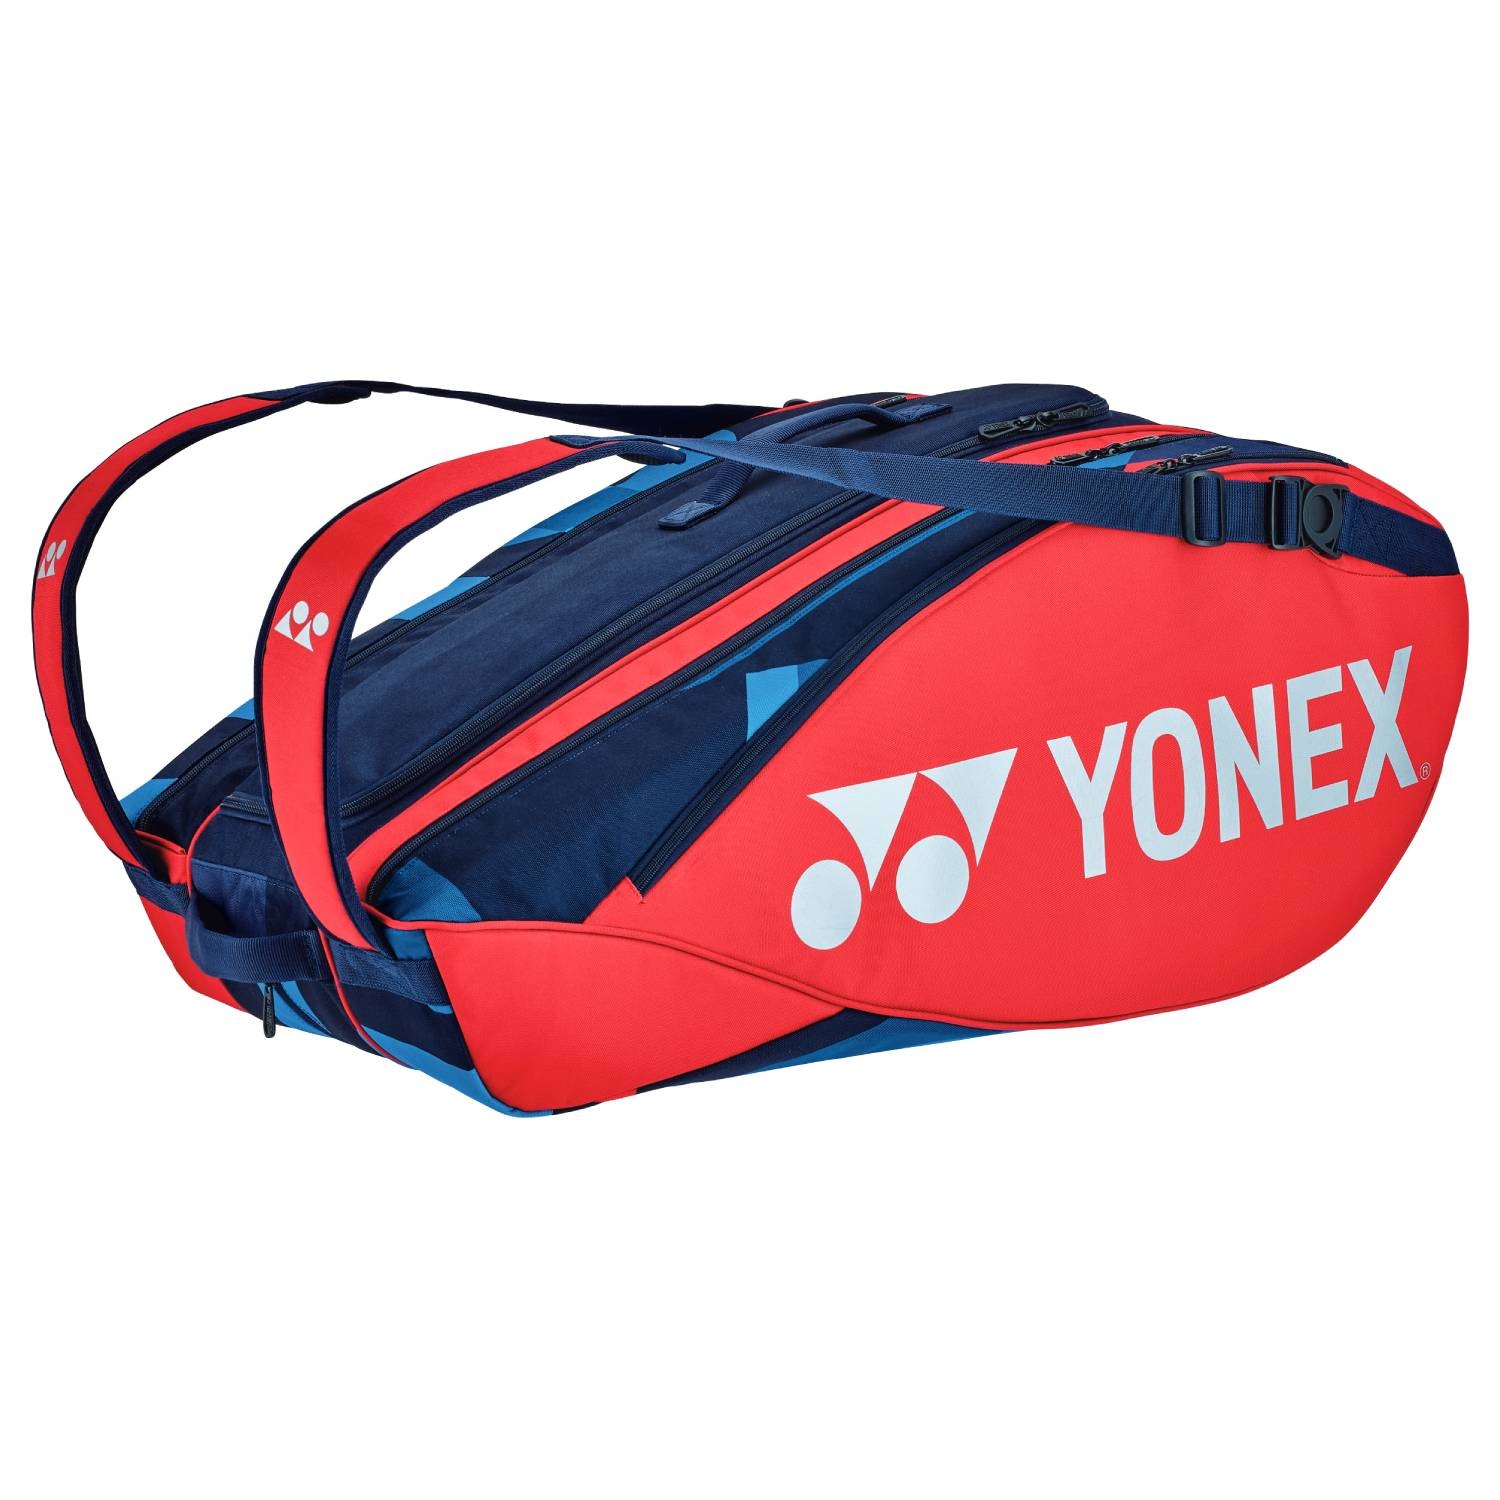 Yonex Bag Pro Thermal x9 Scarlet